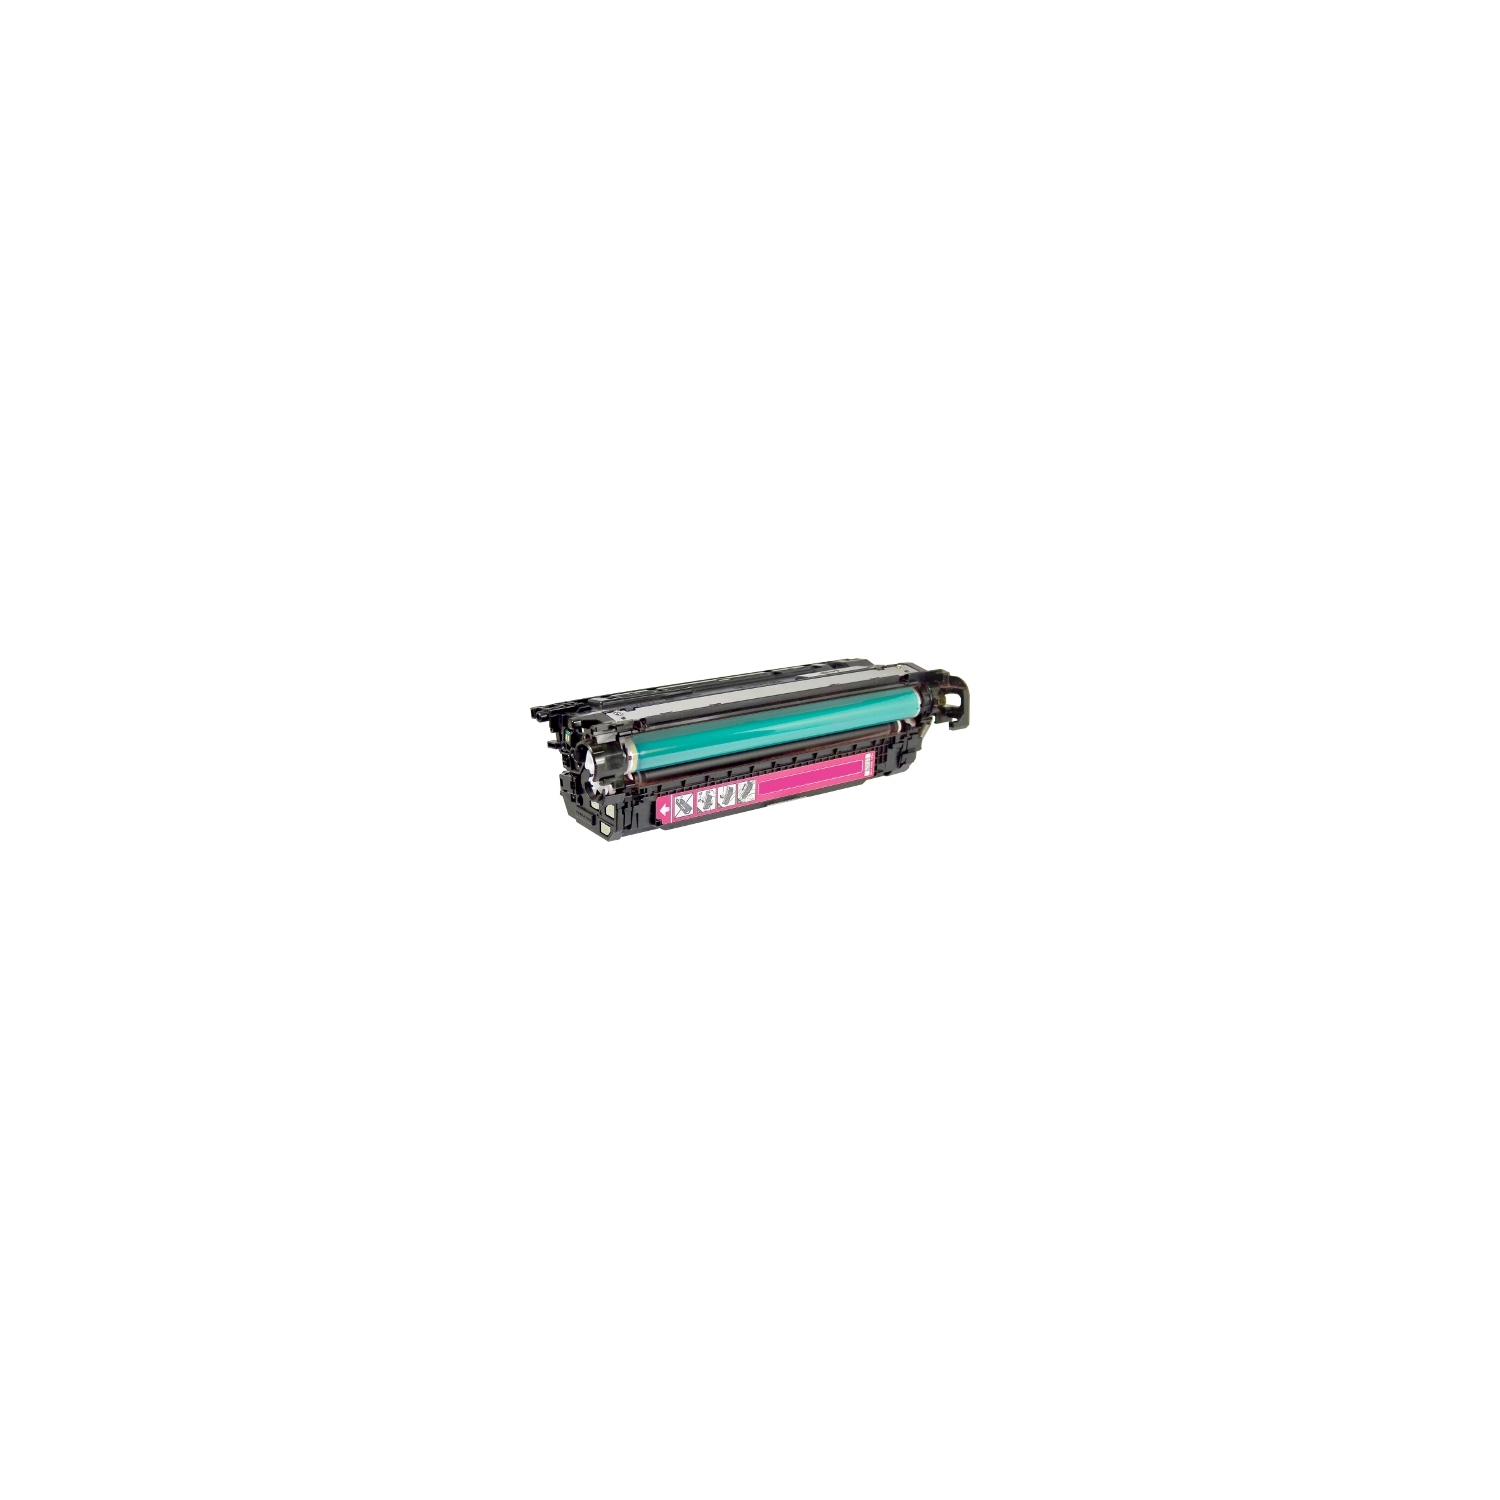 Compatible HP 646A CF033A Magenta High Quality Laser Toner Cartridge for use in Color LaserJet Enterprise CM4540, CM4540f, CM4540fskm MFP